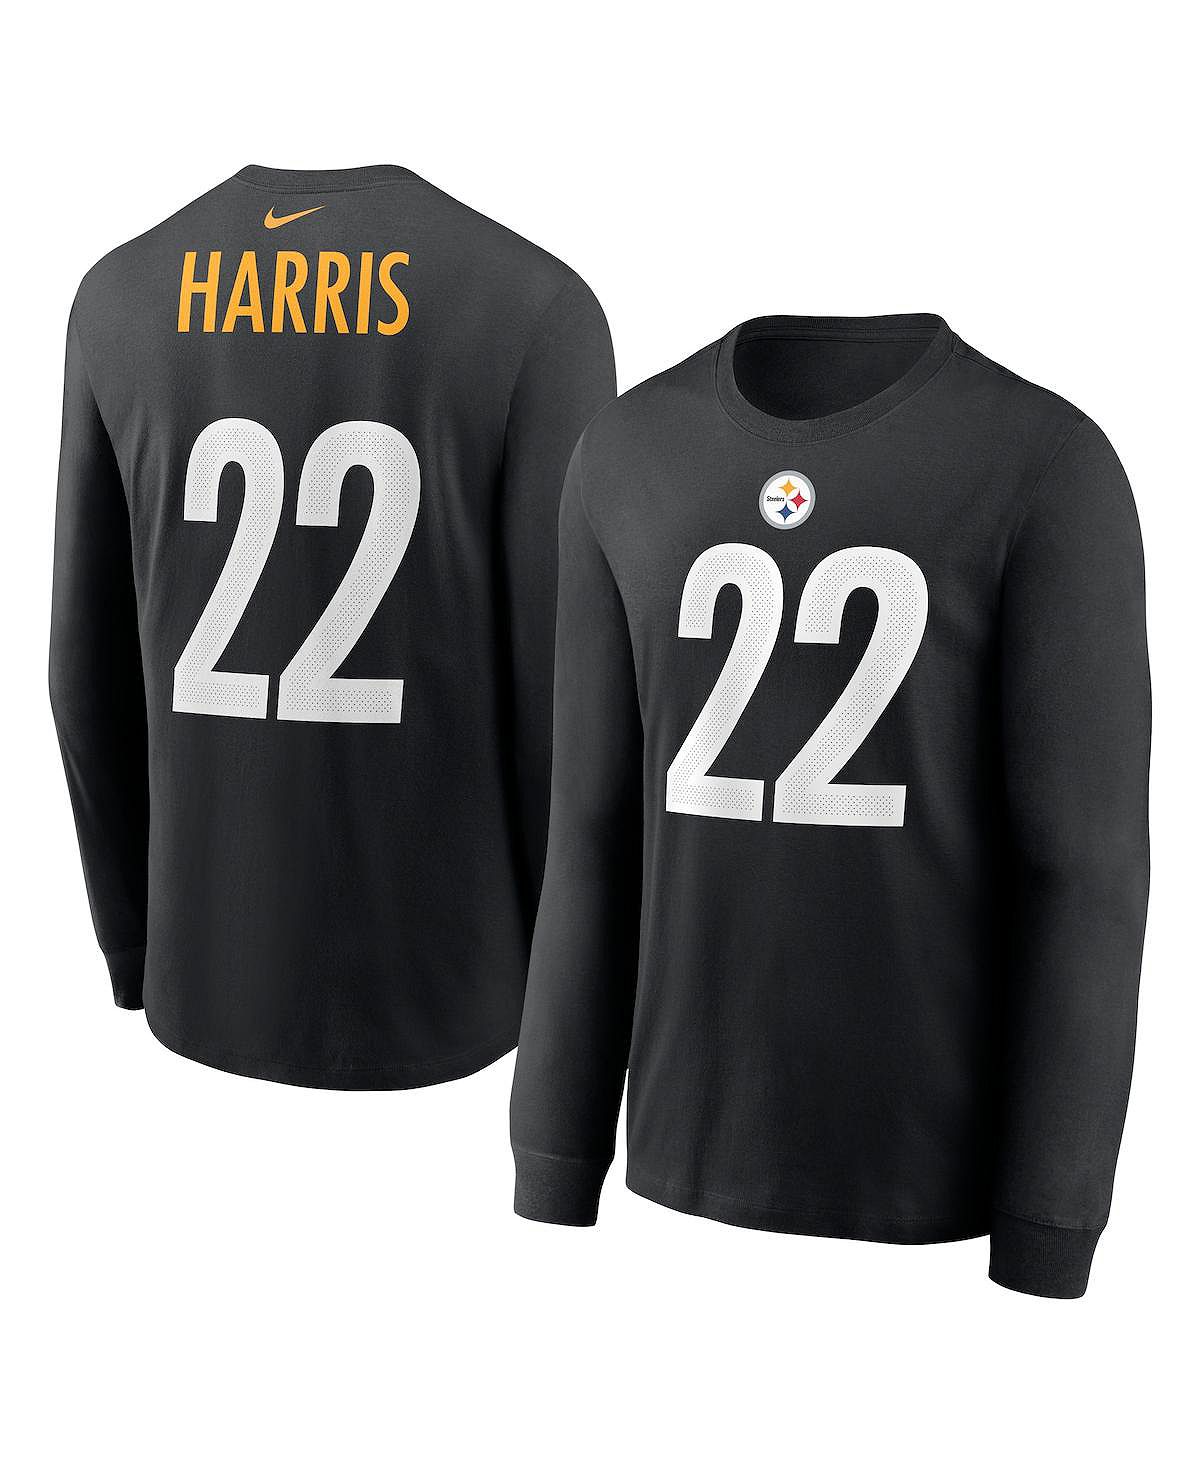 Мужская футболка с длинным рукавом najee harris black pittsburgh steelers с именем и номером игрока Nike, черный орден за преданность делу